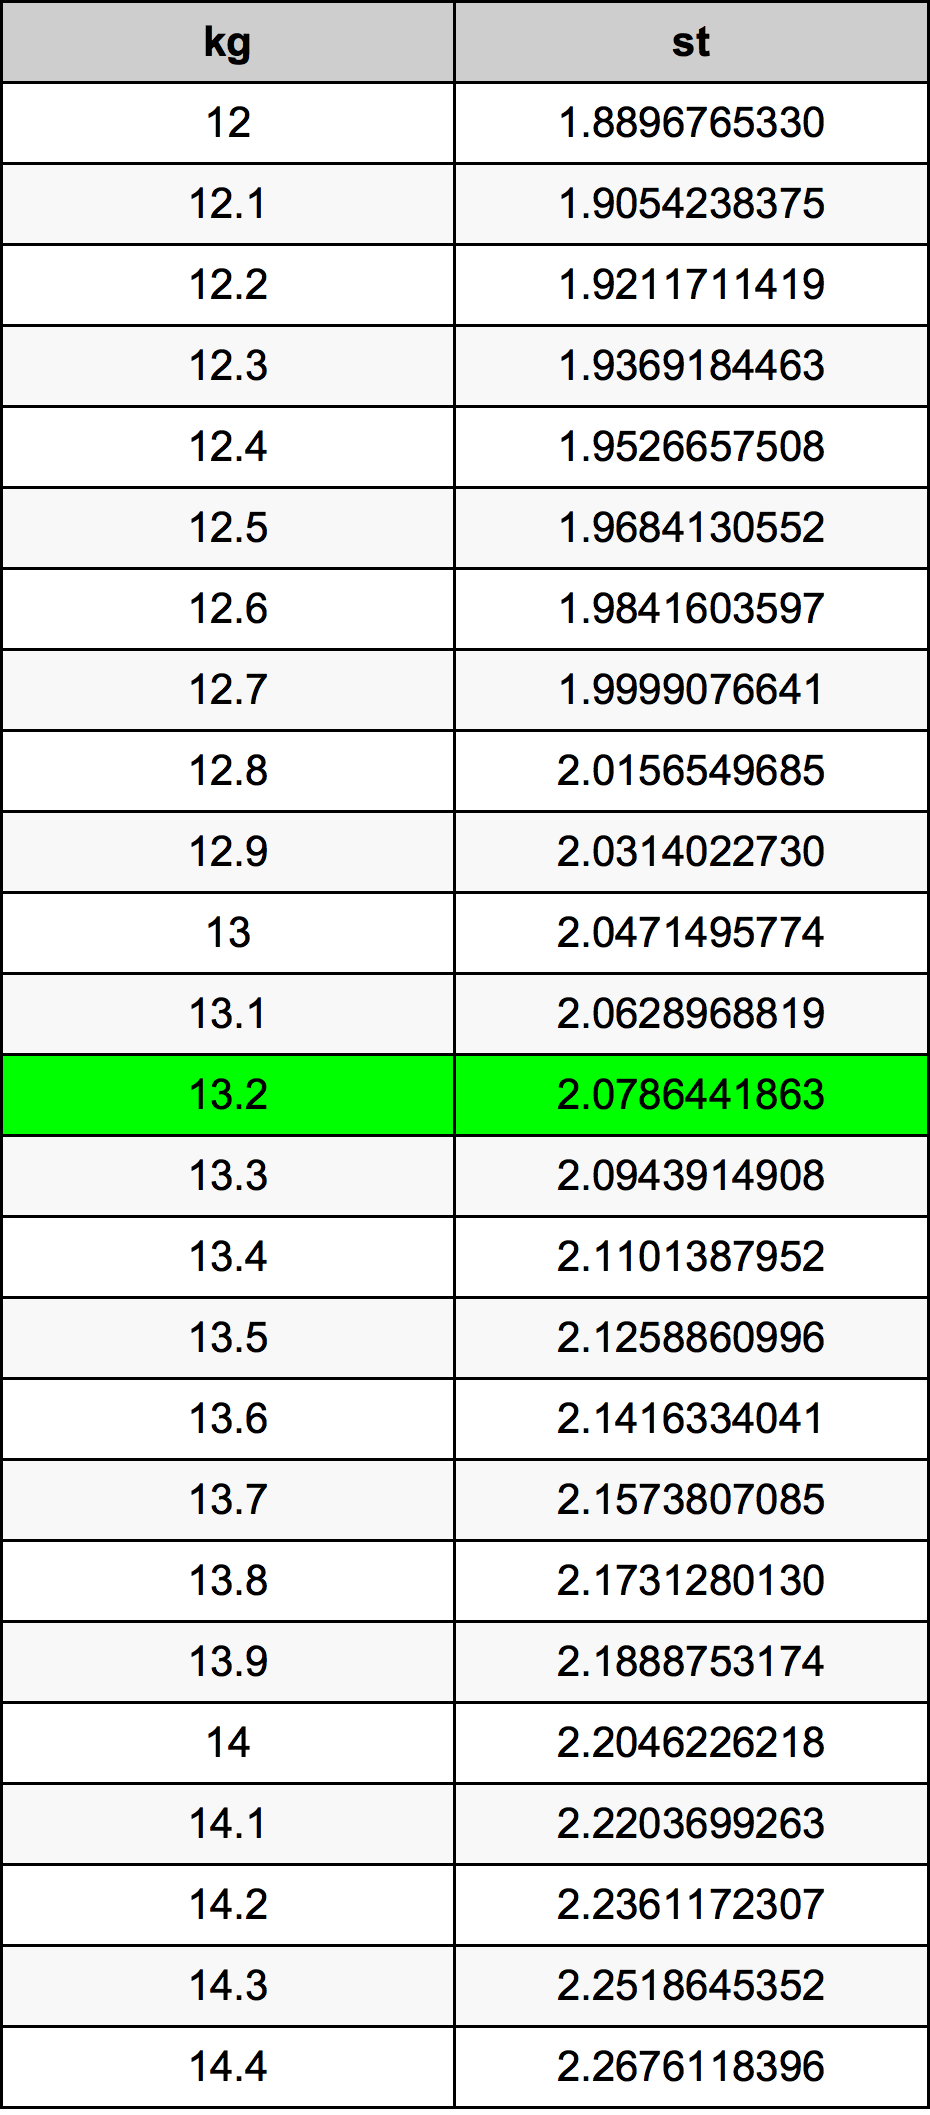 13.2 Kilogramme table de conversion